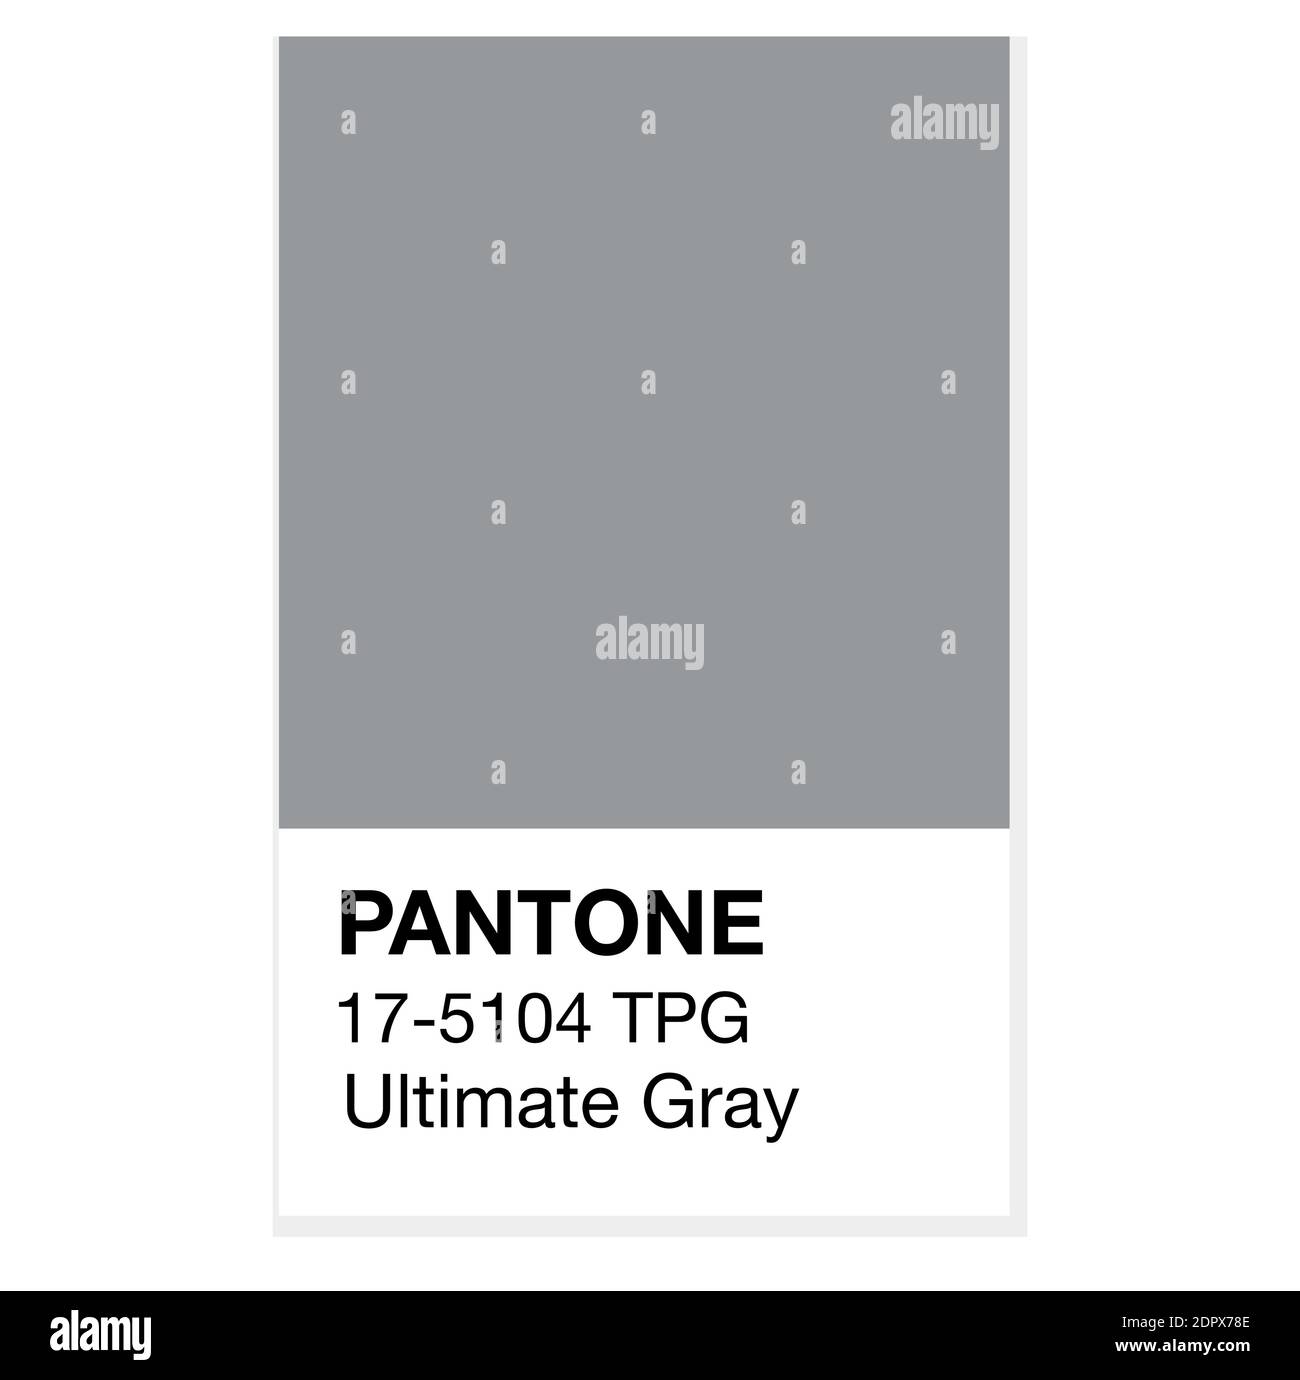 SWINDON, Royaume-Uni - 20 DÉCEMBRE 2020: Pantone Ultimate Grey Trending Colors of the Year 2021. Illustration vectorielle des nuances de couleurs Illustration de Vecteur